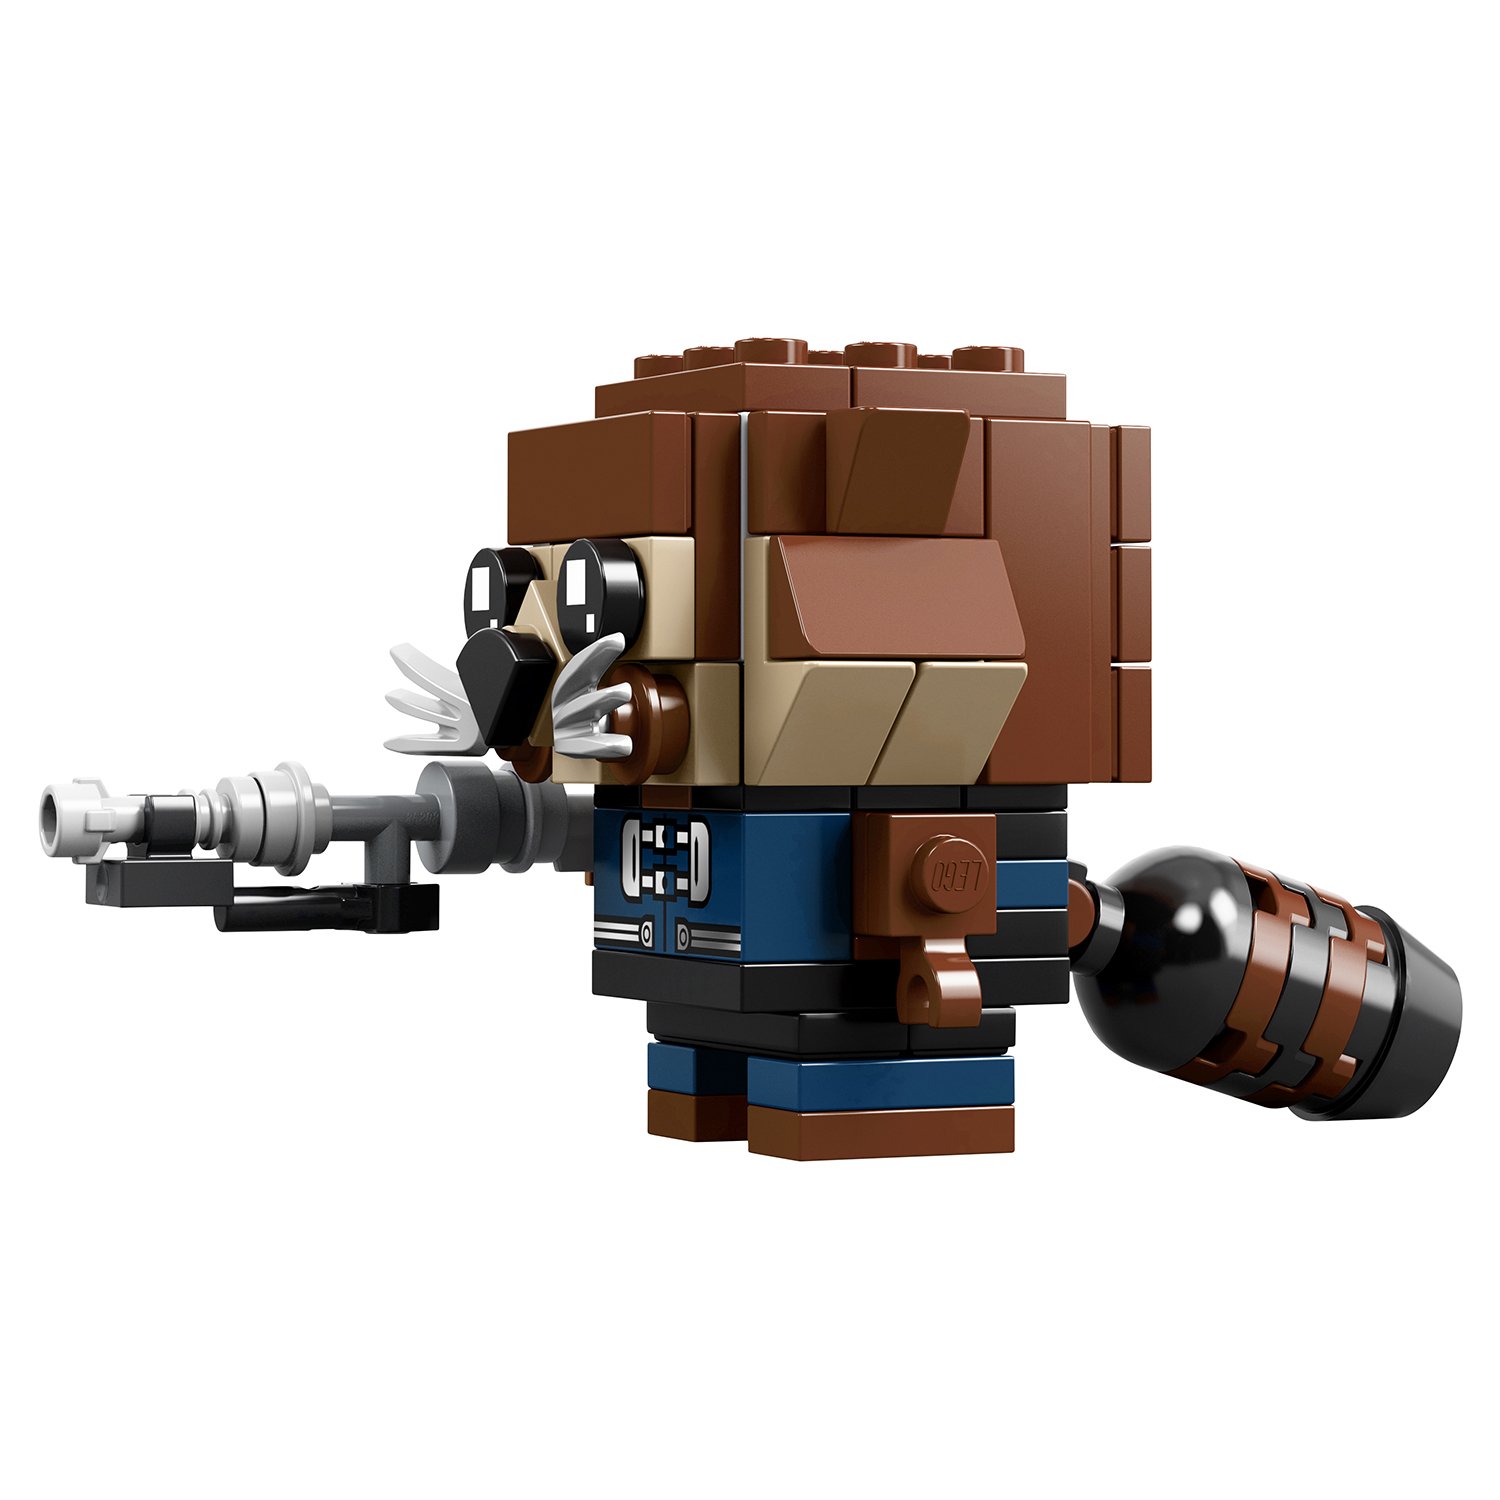 Lego BrickHeadz 41626 Грут и Ракета